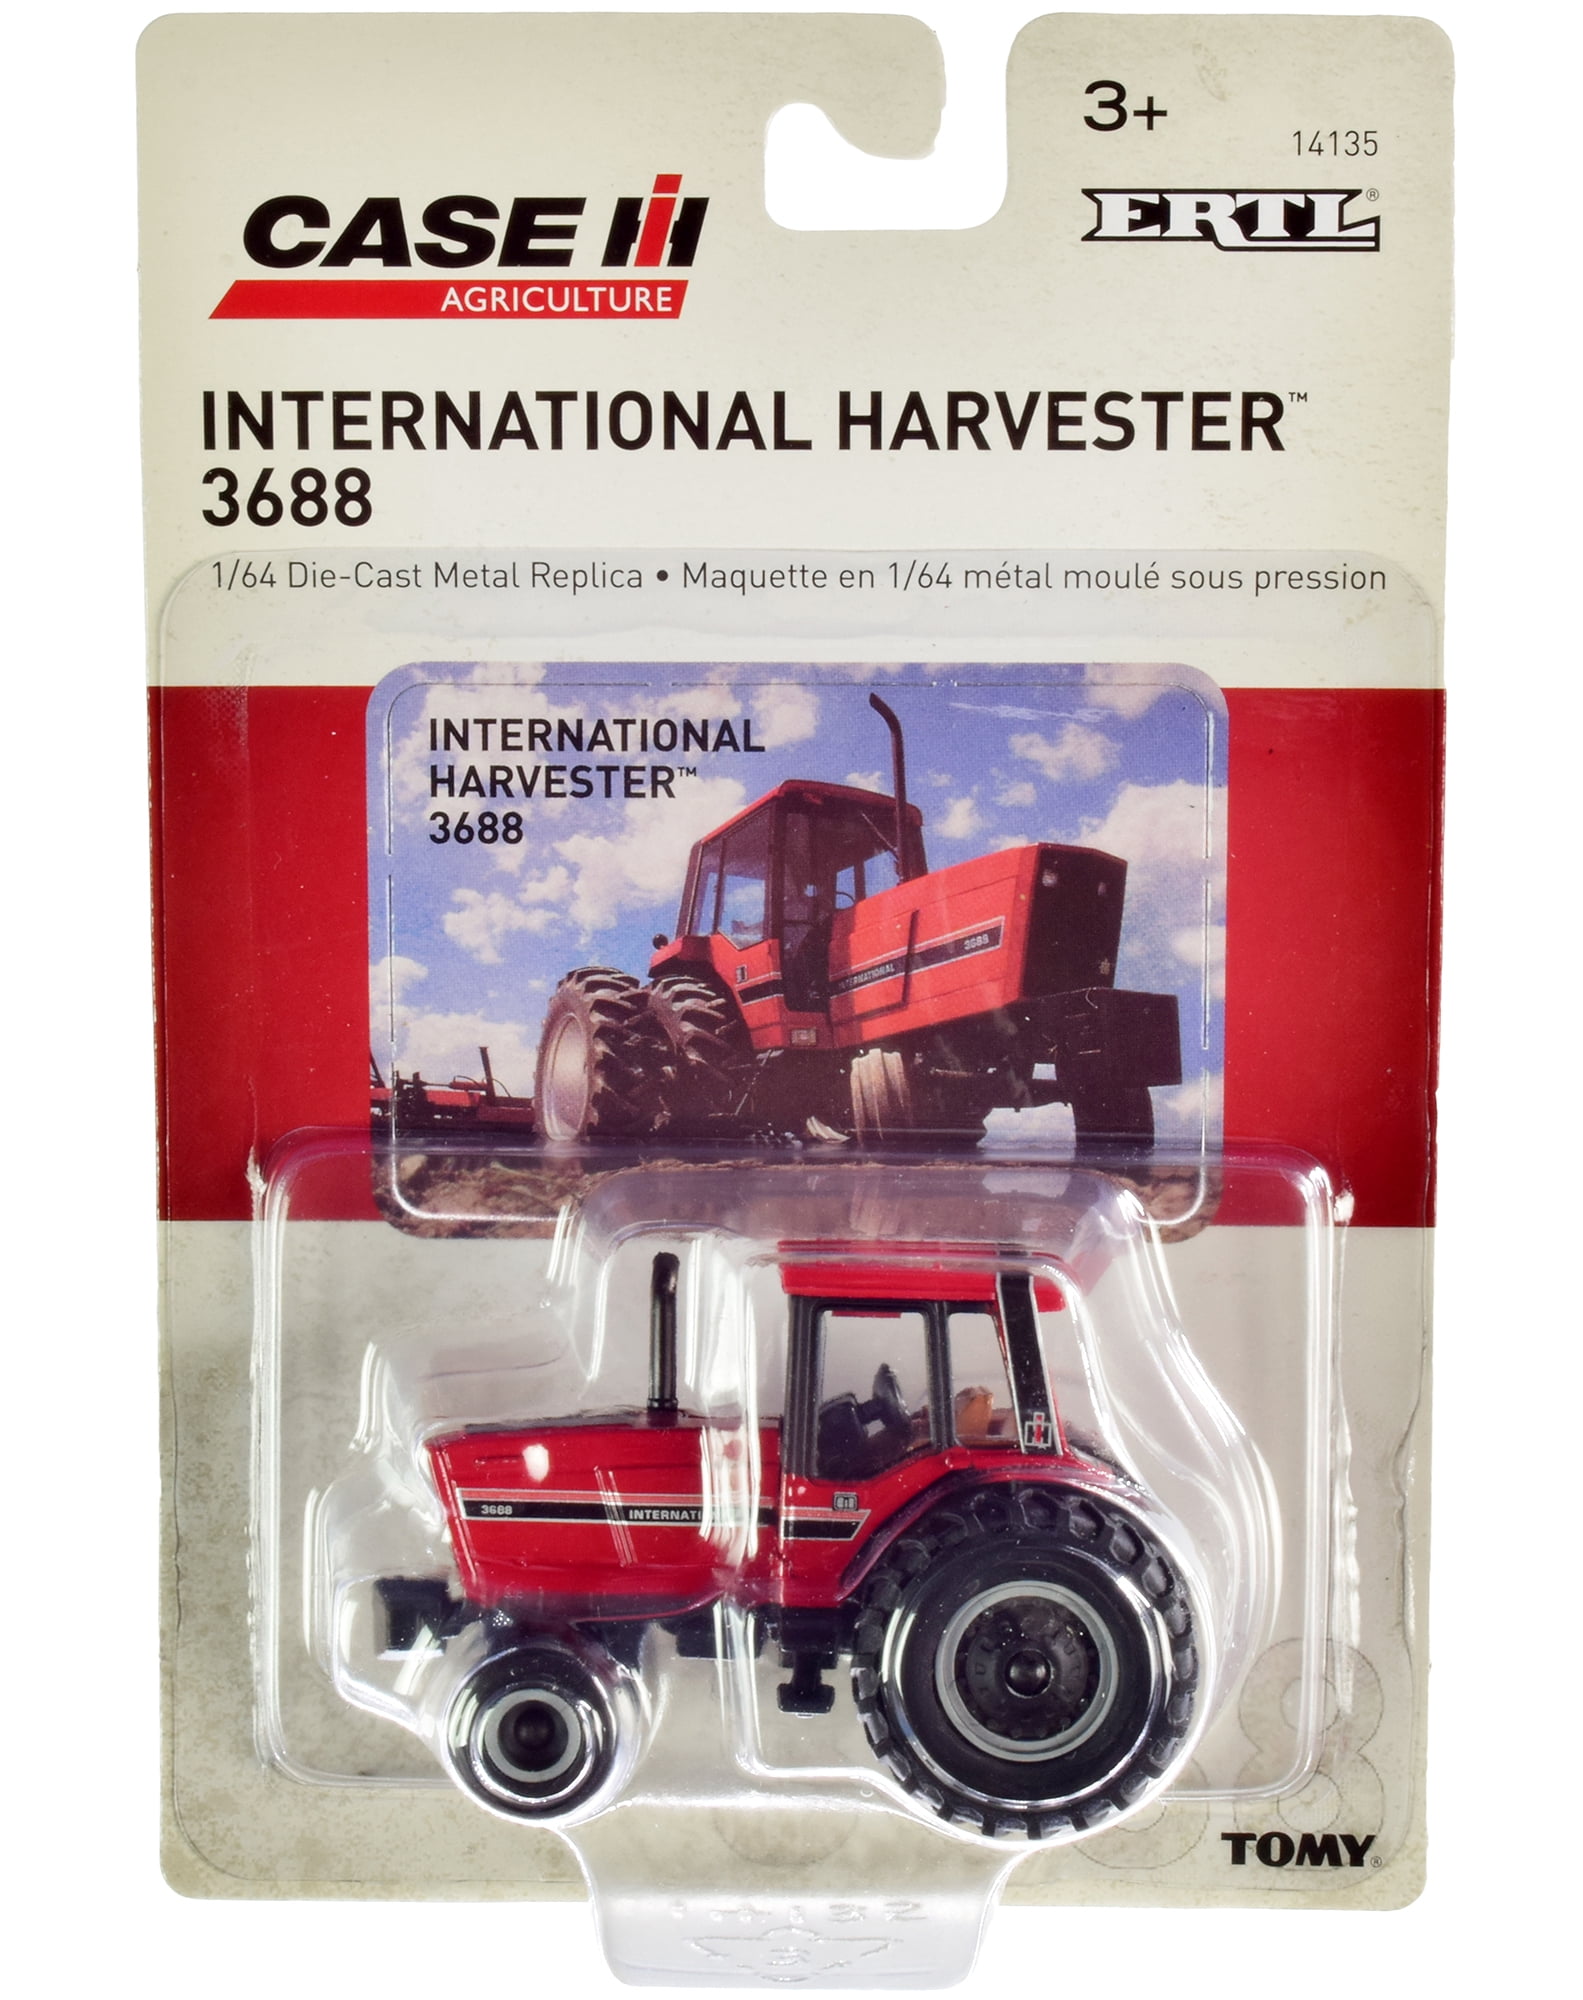 Case IH International Harvester 3688 1/64 Die-Cast Metal Replica Toy